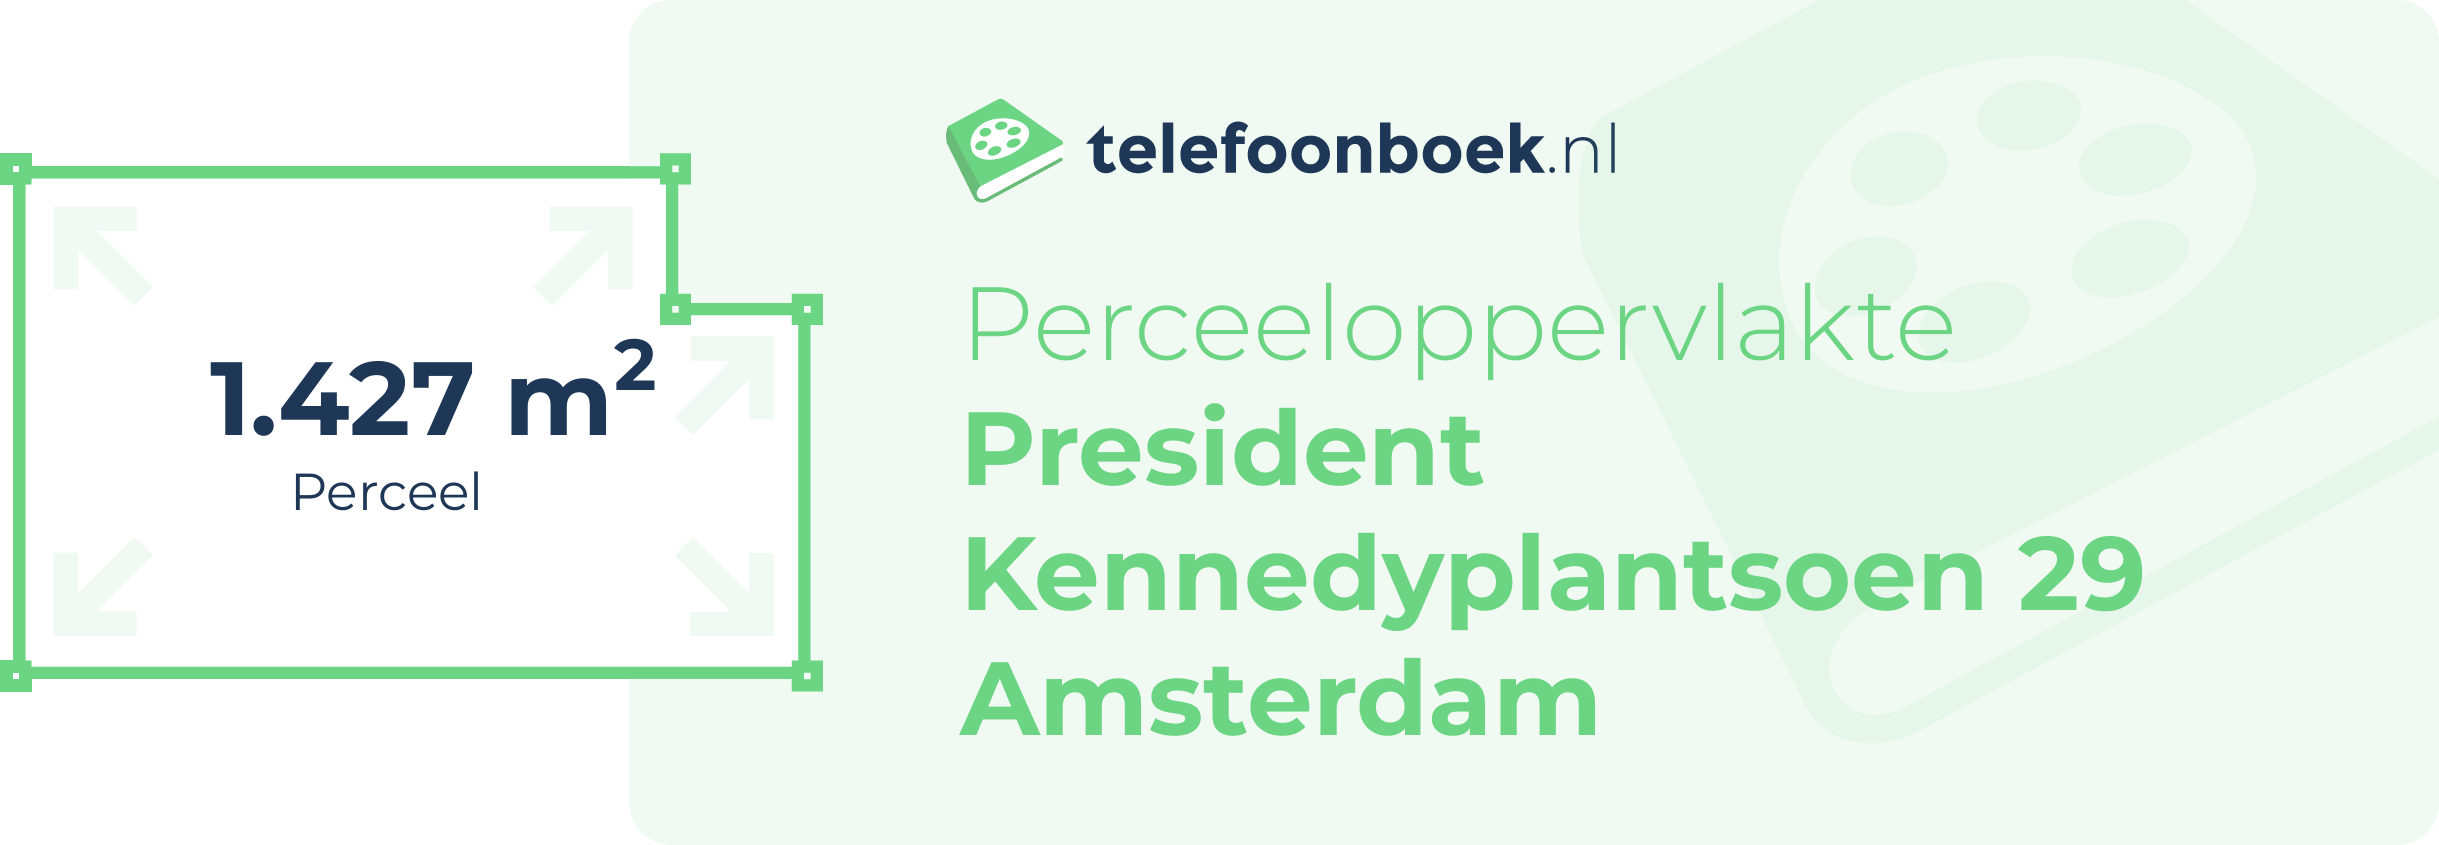 Perceeloppervlakte President Kennedyplantsoen 29 Amsterdam